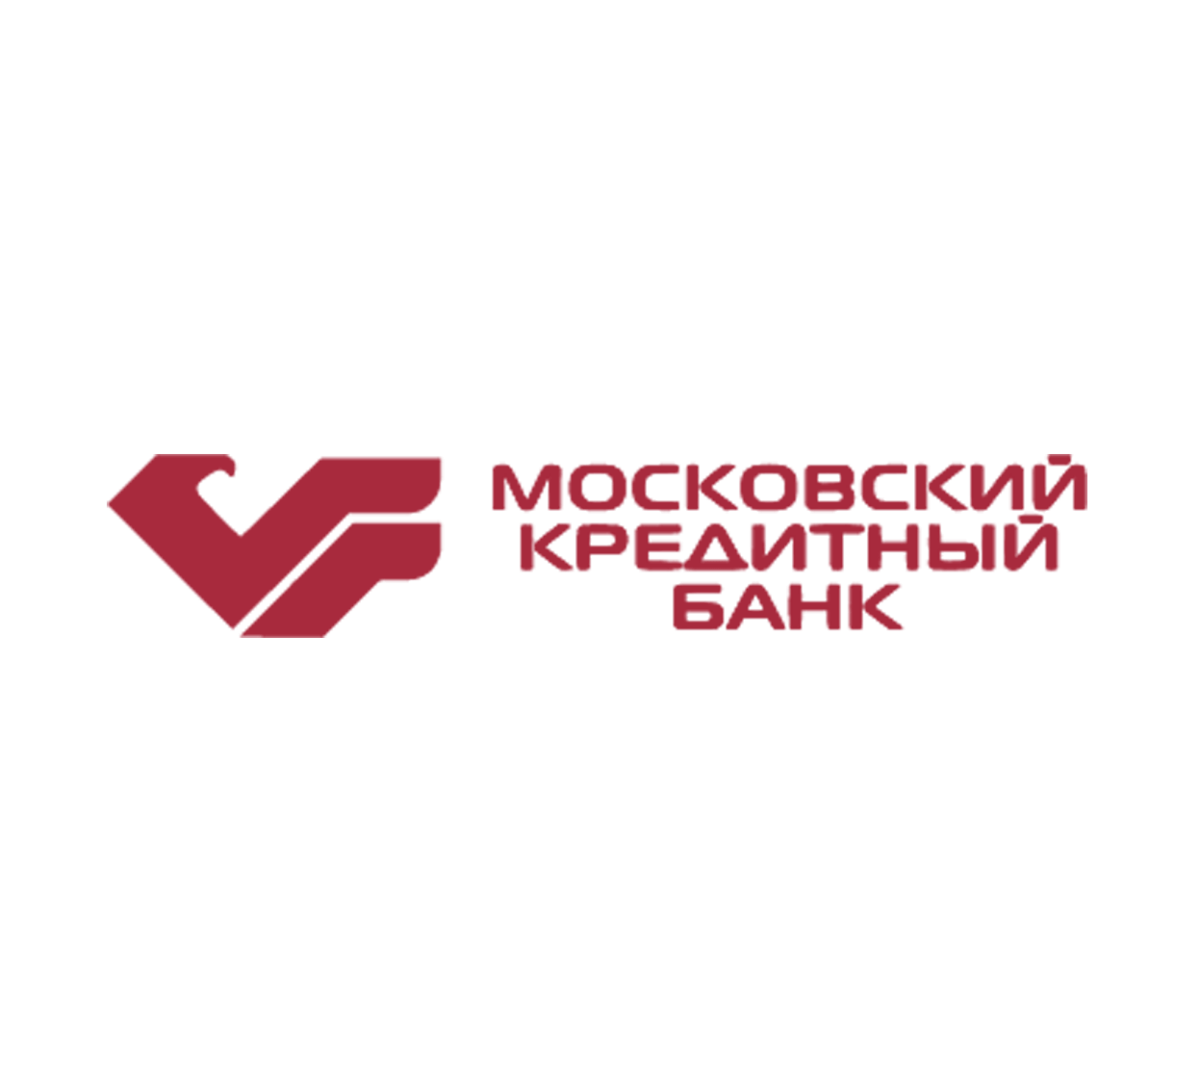 Банк новый логотип. Мкб лого. Логотип Московского кредитного банка. Московский кредитный банк новый логотип. Московский кредитный банк логотип 2022.